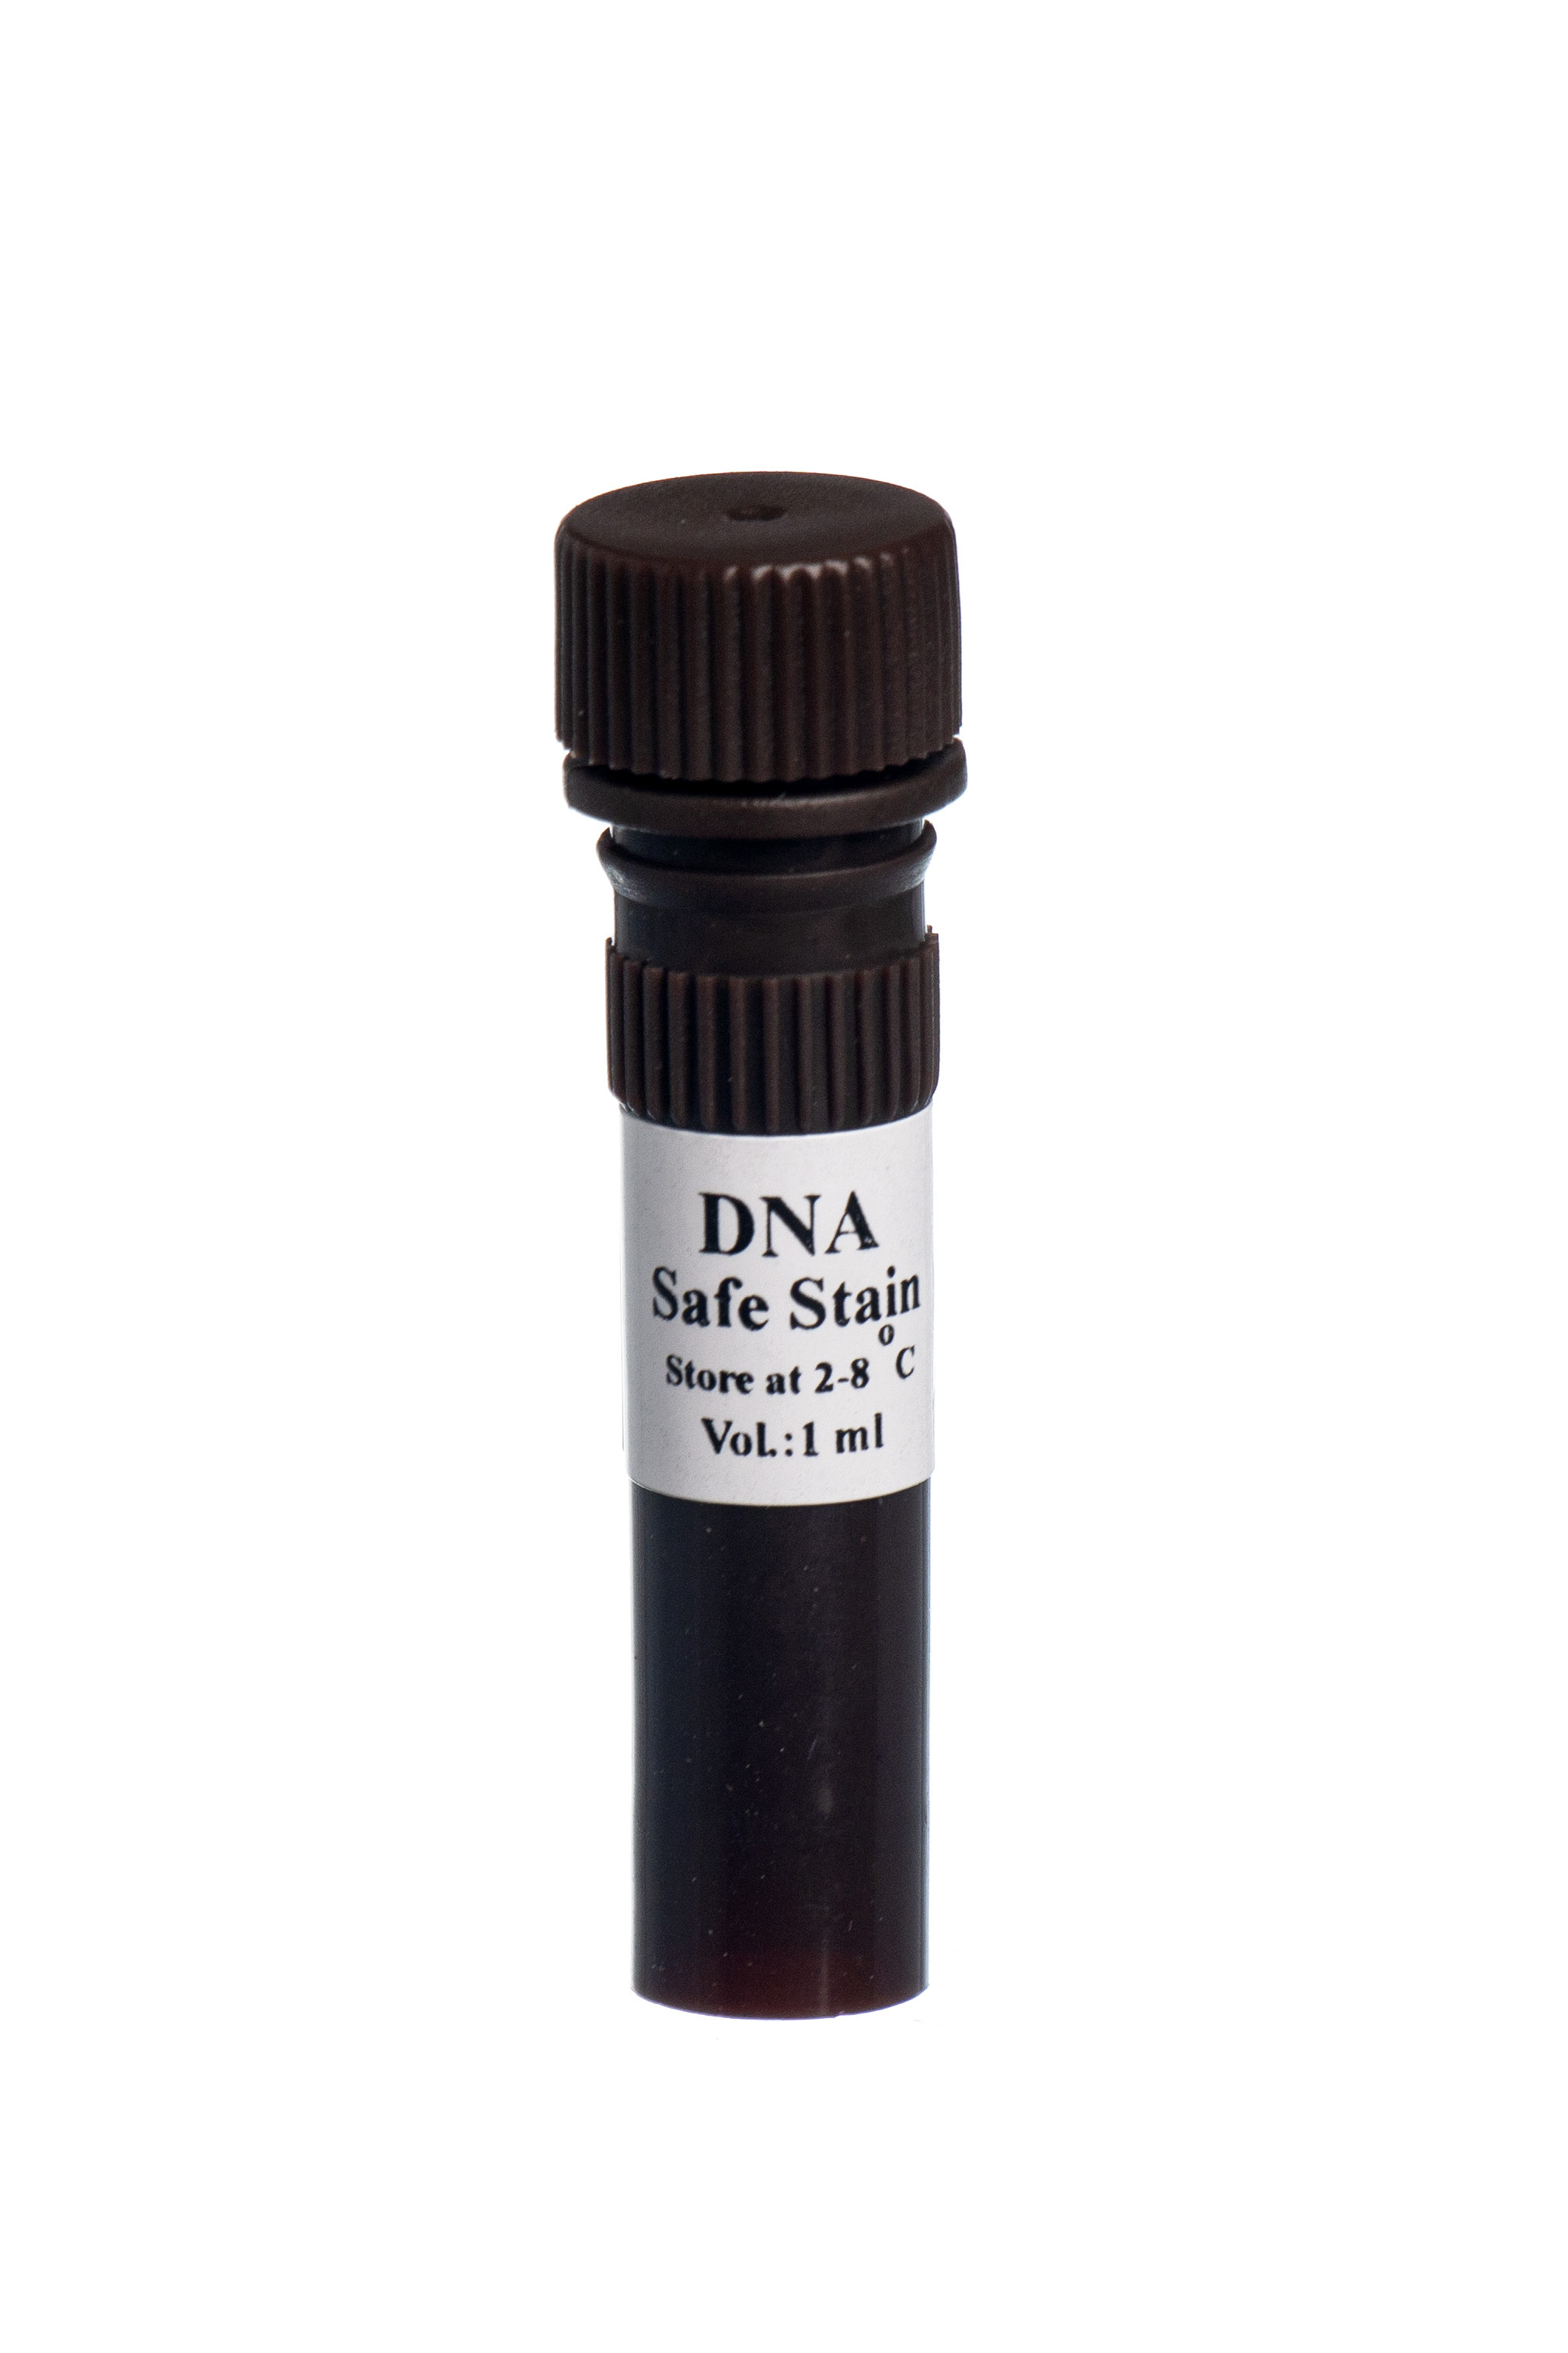 رنگ دی ان ا - DNA Safe Stain -1ml-EP5082 - سیناکلون - کیت - سلولی و مولکولی - سیناکلون